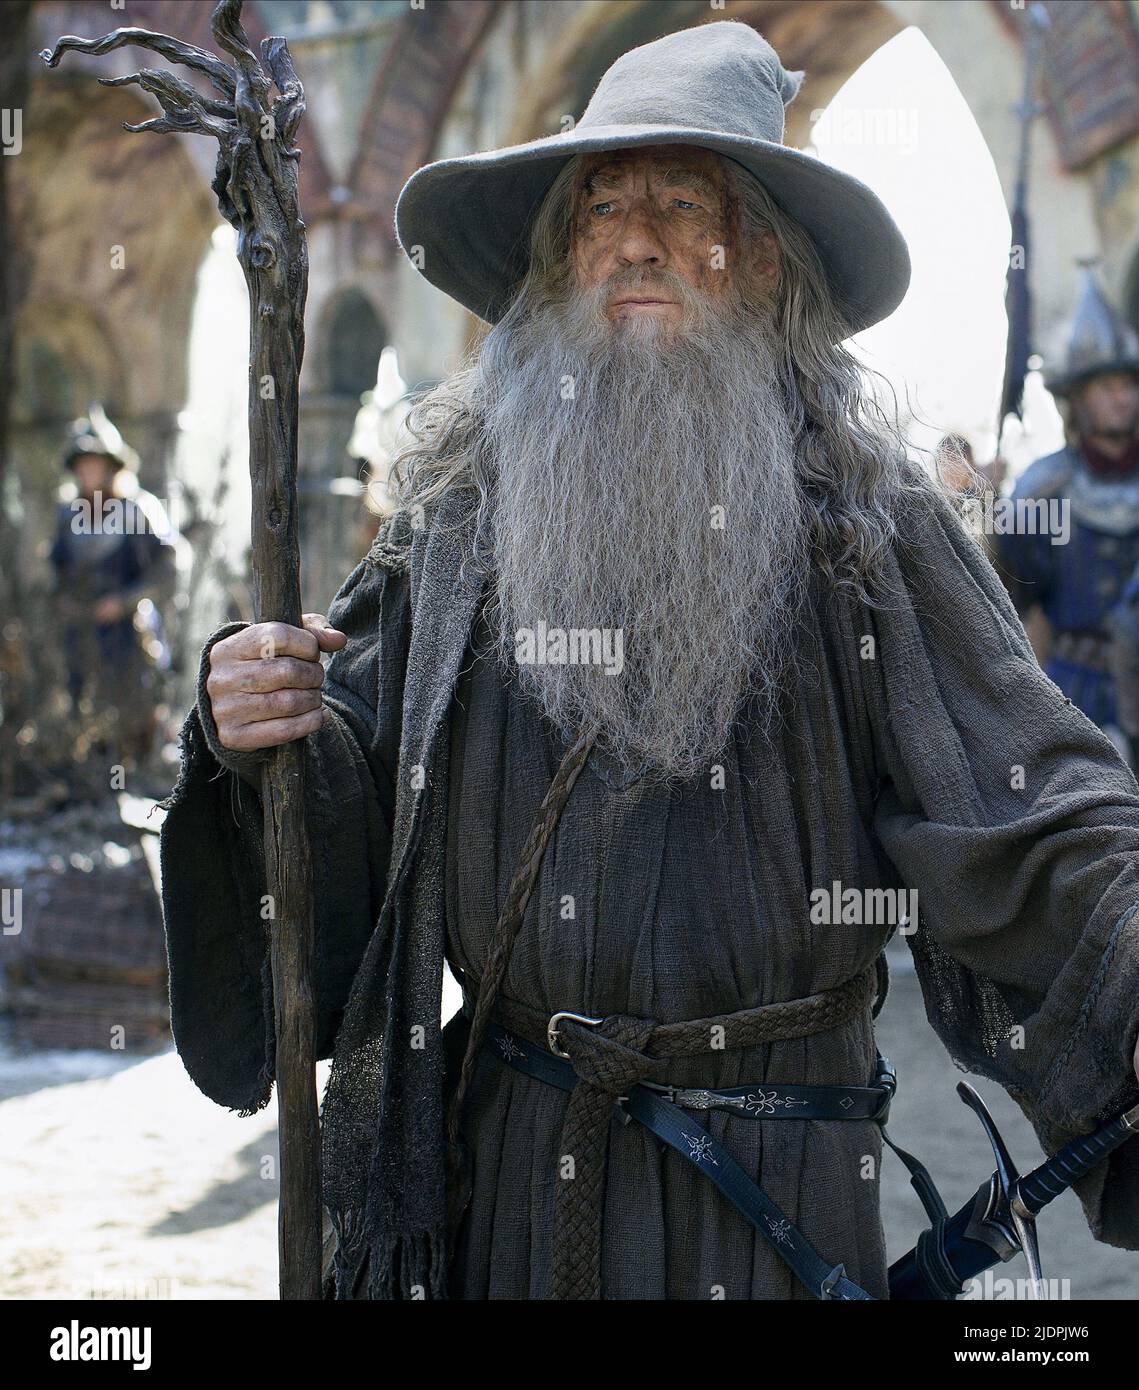 Gandalf hat immagini e fotografie stock ad alta risoluzione - Alamy